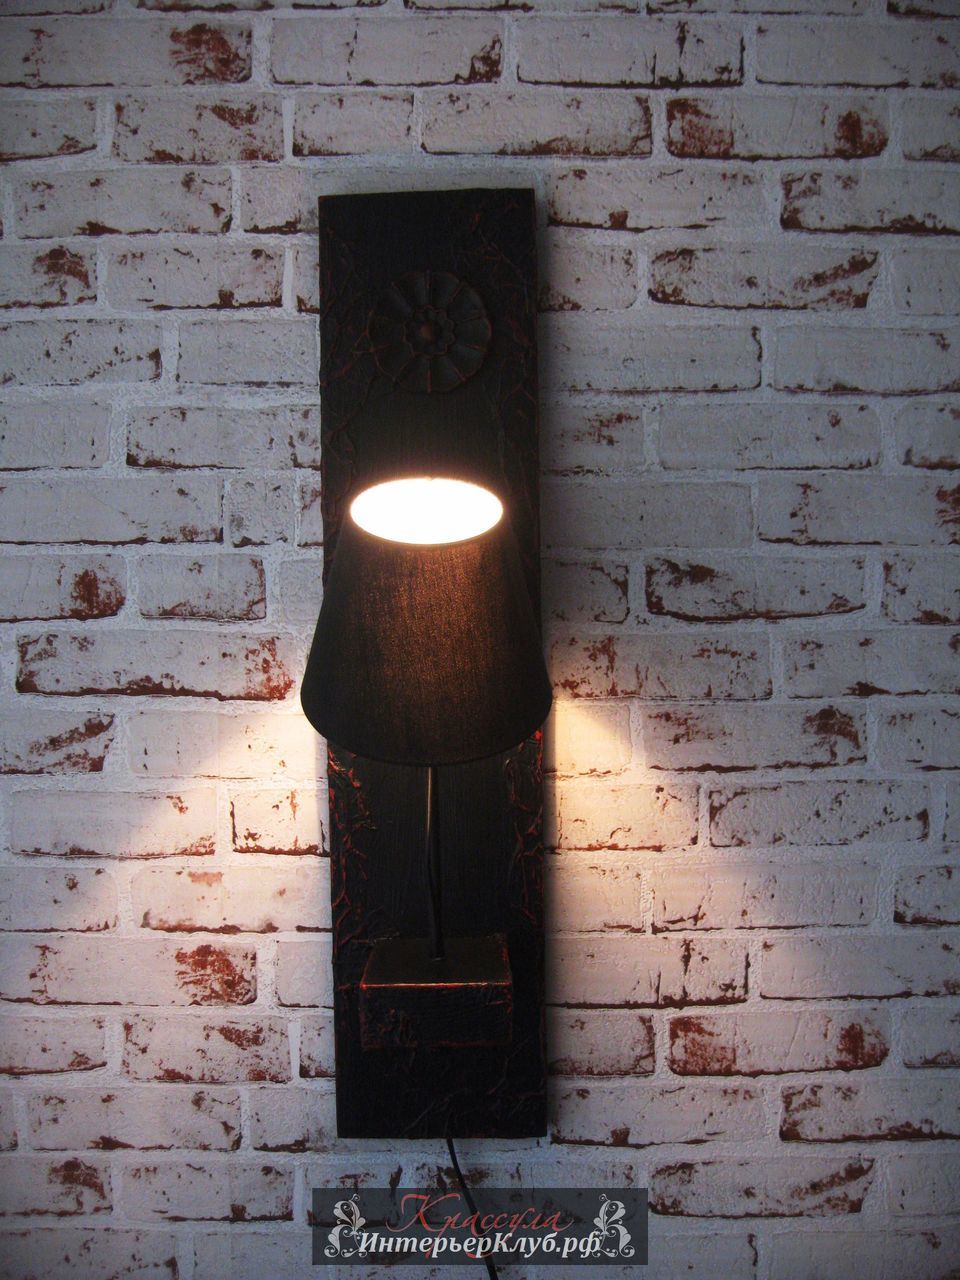 55 Настенный светильник Дарк  - амбарная доска, с элементами декора, цвет - сочетание черного с красным, 2 шт.  Эксклюзивные светильники ручной работы, авторские светильники ручной работы